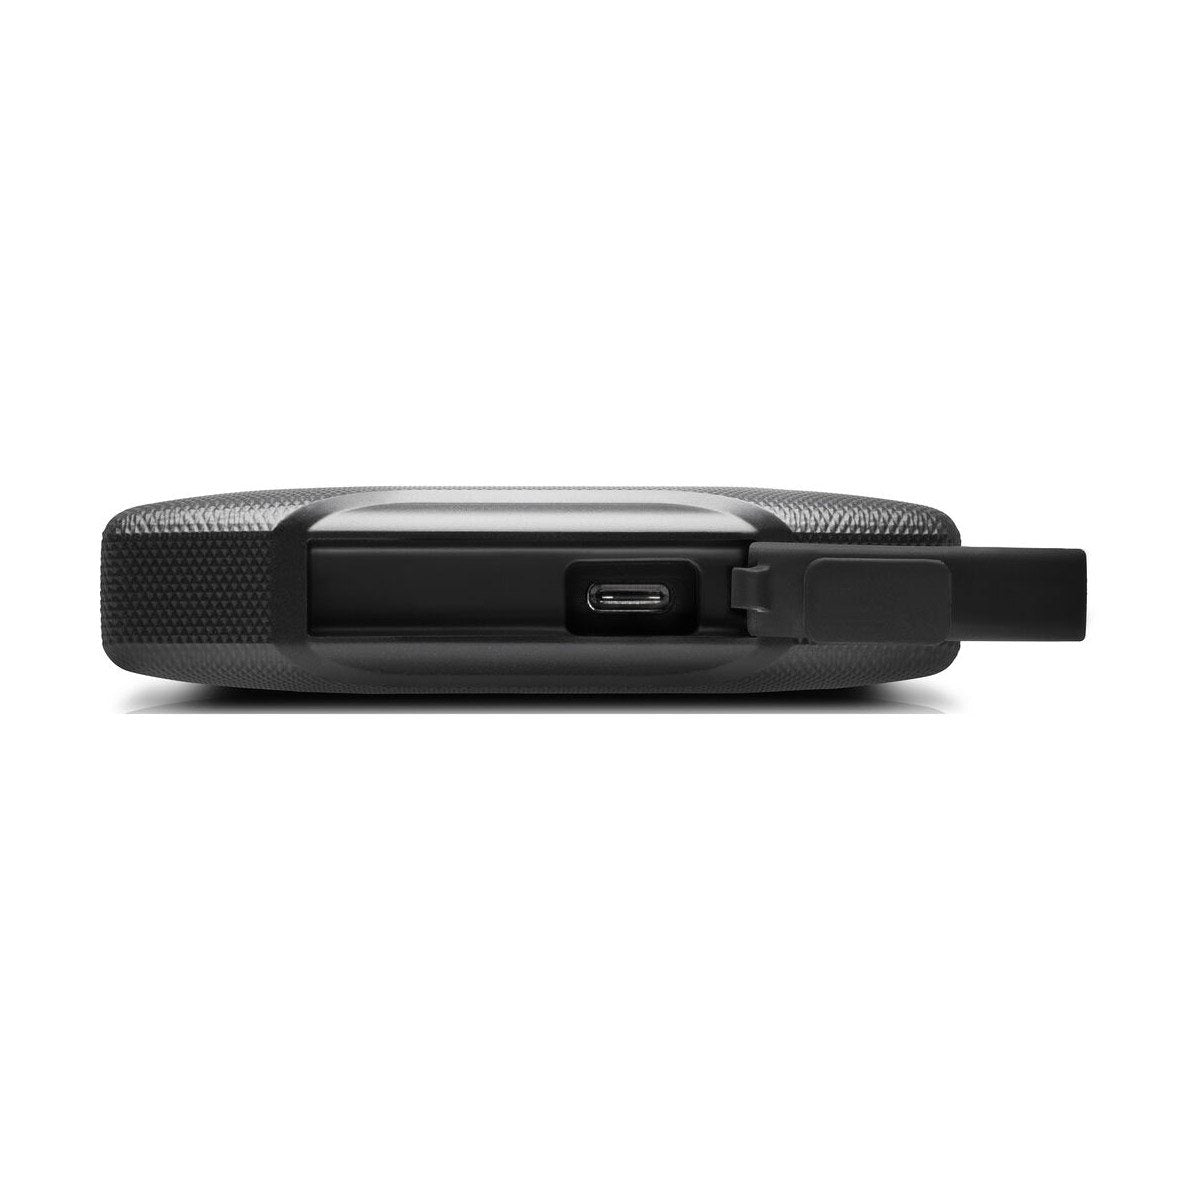 SanDisk Professional 1TB G-DRIVE ArmorATD USB 3.2 / USB 3.1 Gen 1 External Hard Drive